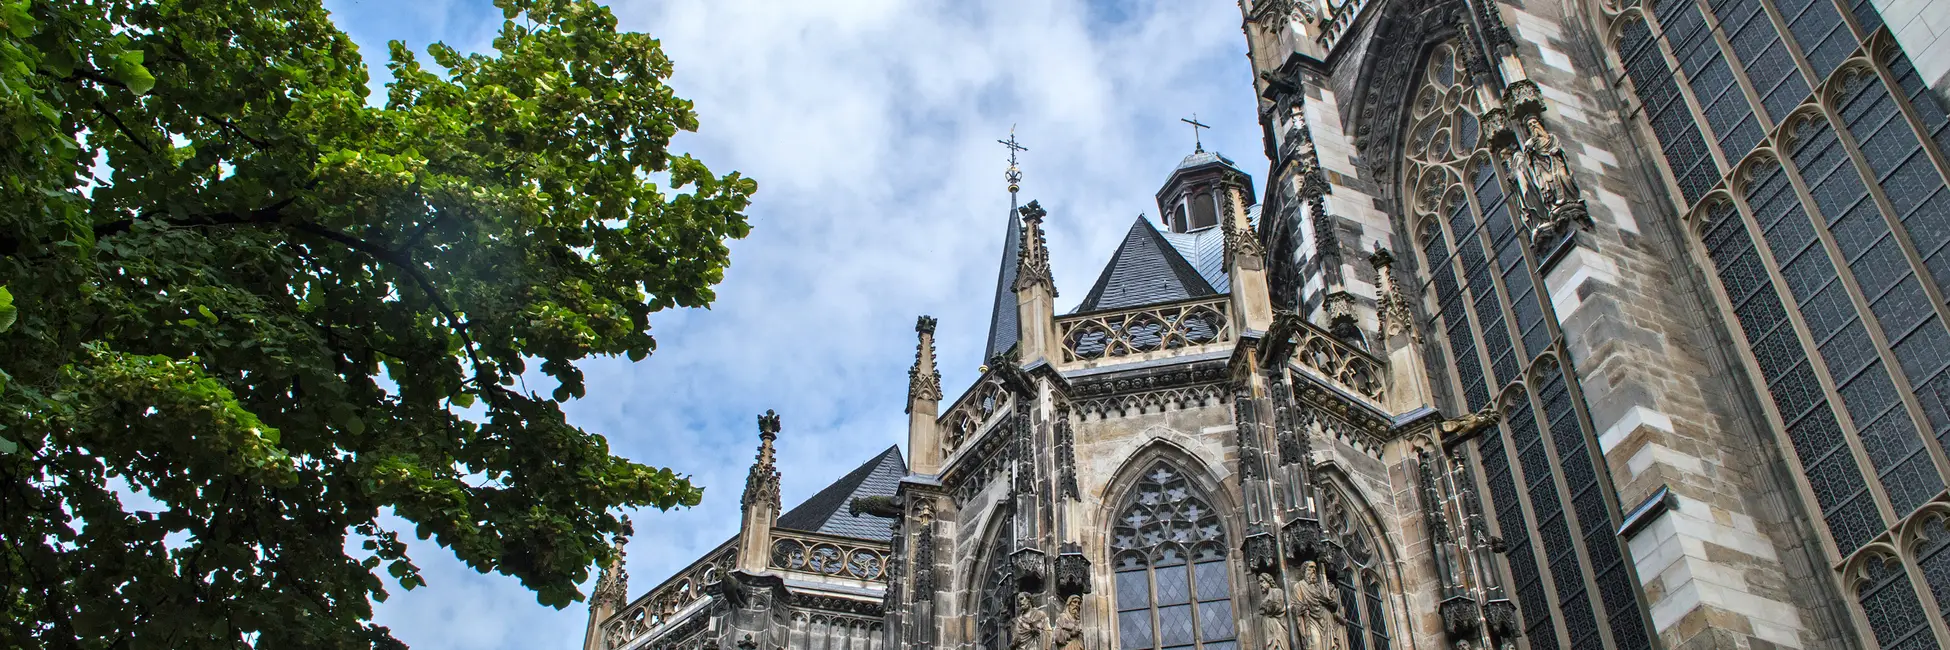 La cathédrale d'Aachen 